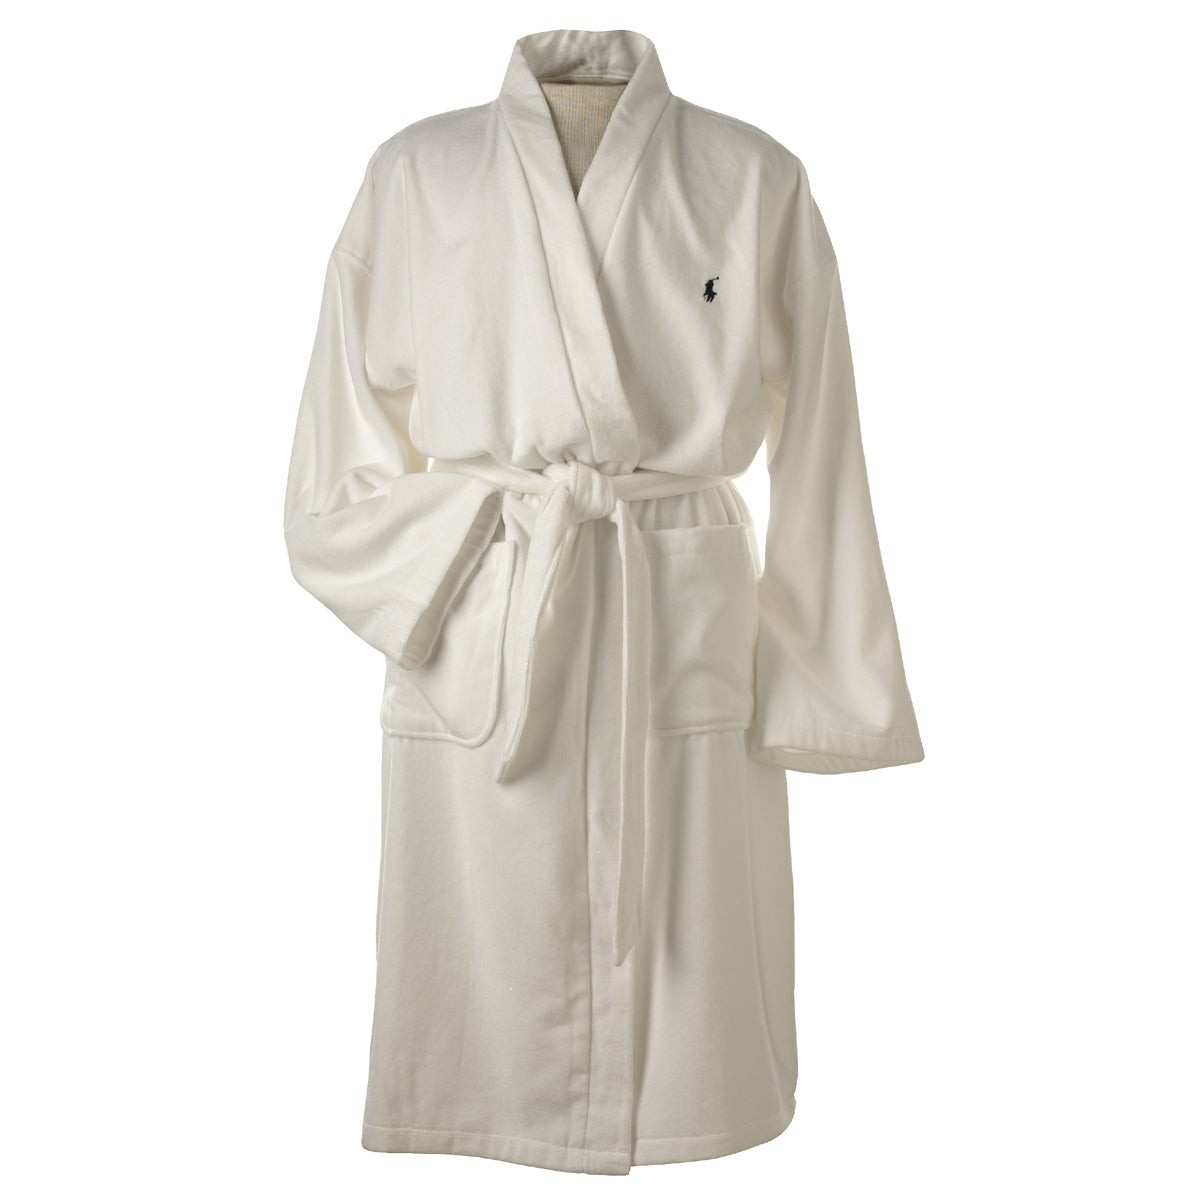 White Cotton Robe Size L/XL